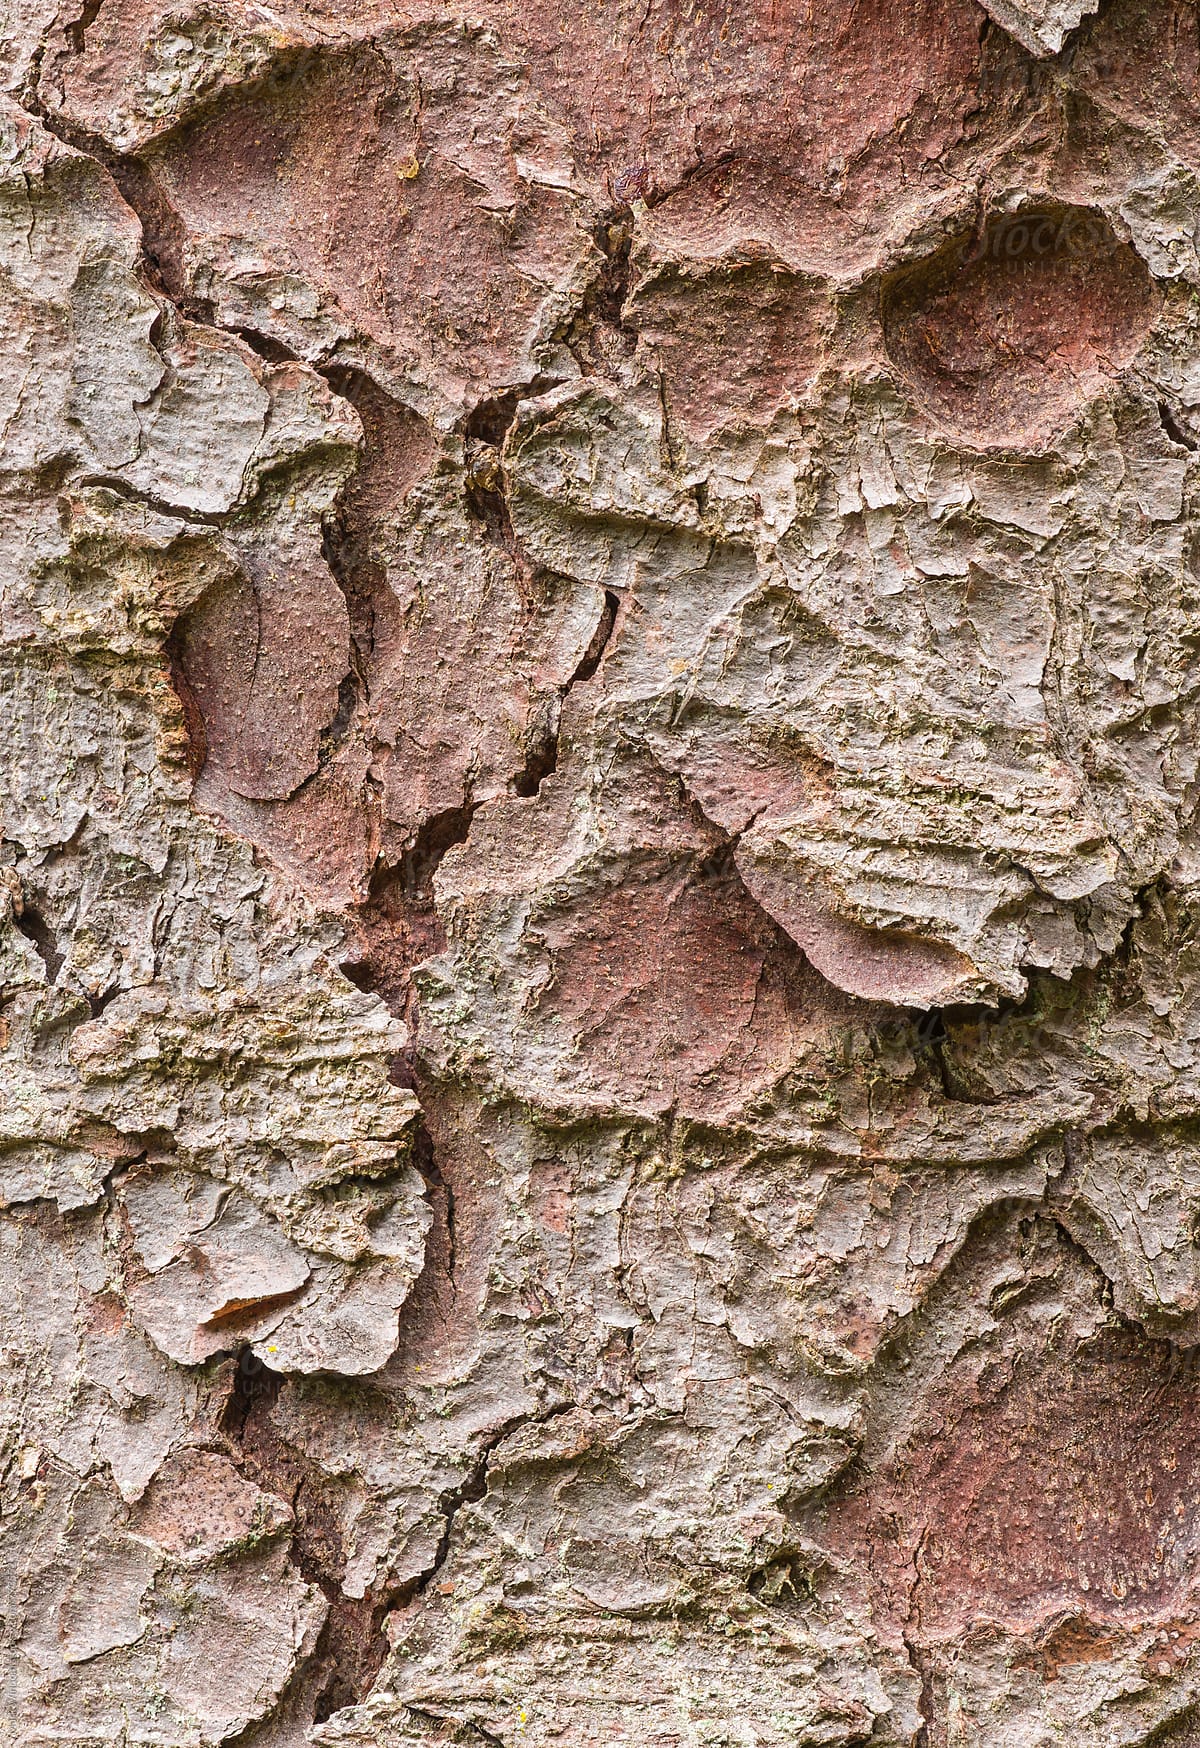 Engelmann Spruce bark textures, closeup